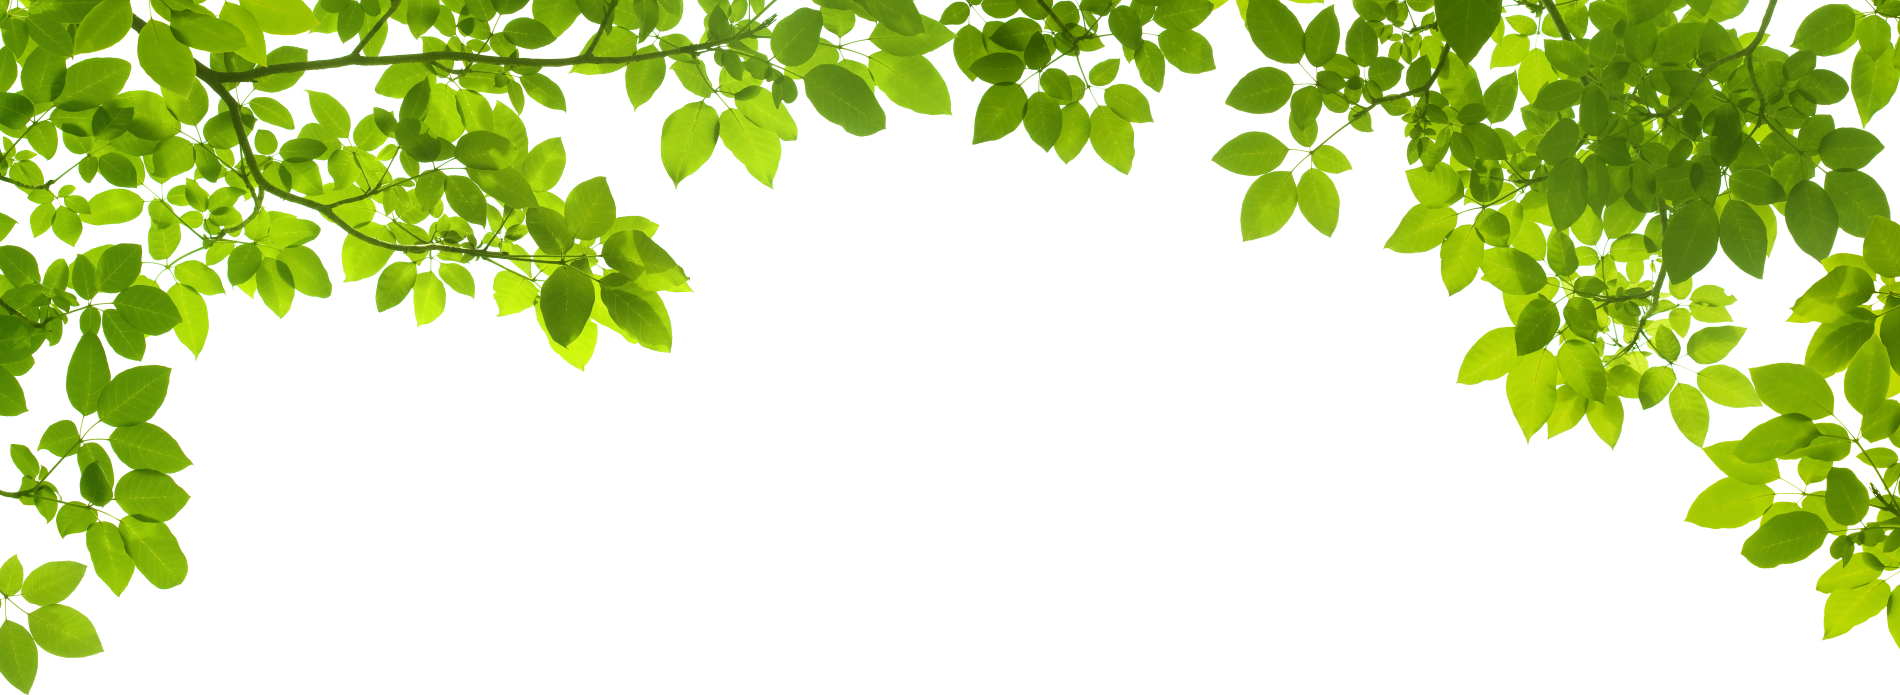 Вертикальная рамка из листьев на прозрачном фоне фото